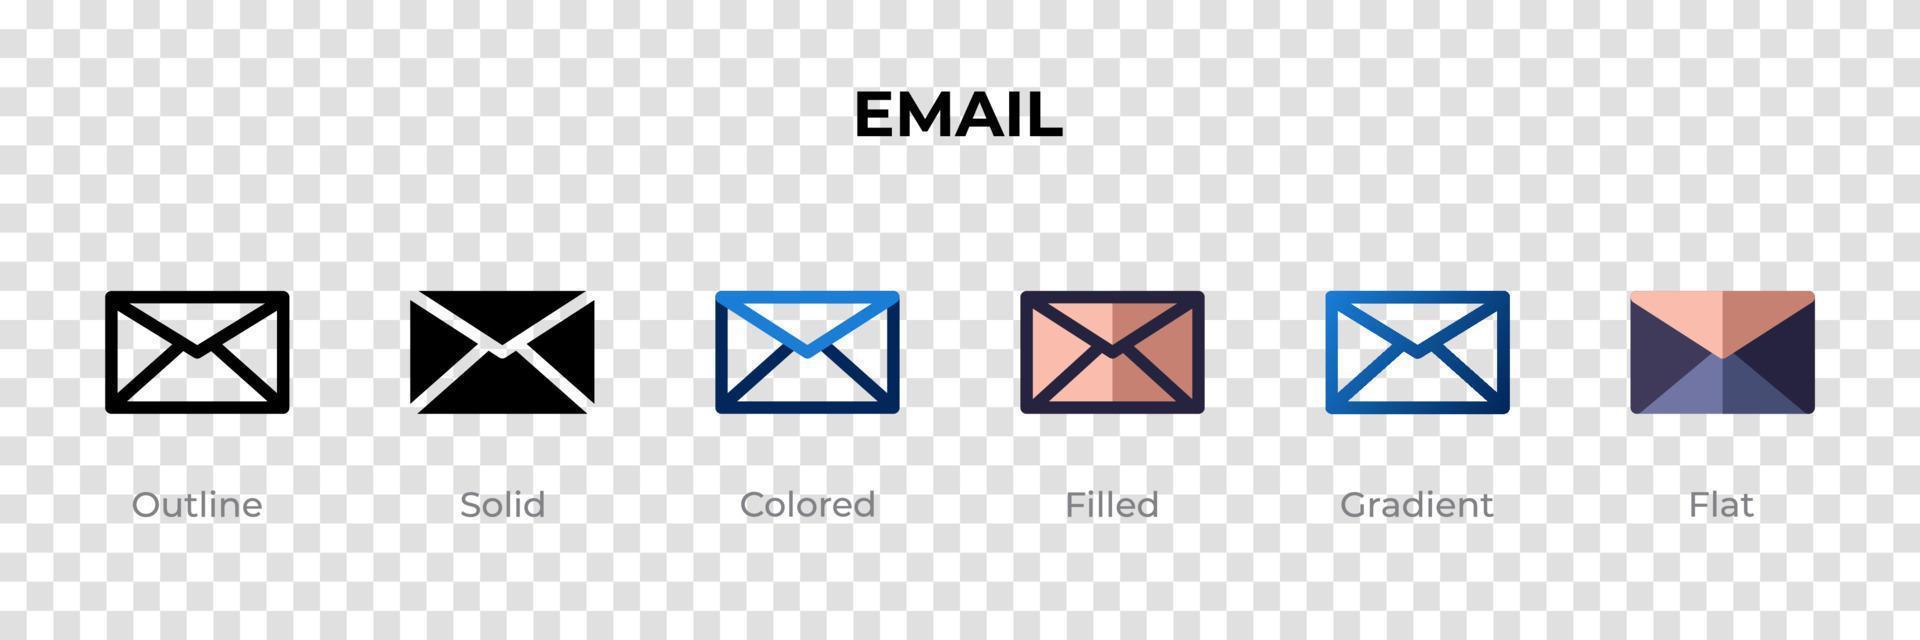 e-postikon i annan stil. e-postvektorikoner utformade i kontur, solid, färgad, fylld, gradient och platt stil. symbol, logotyp illustration. vektor illustration